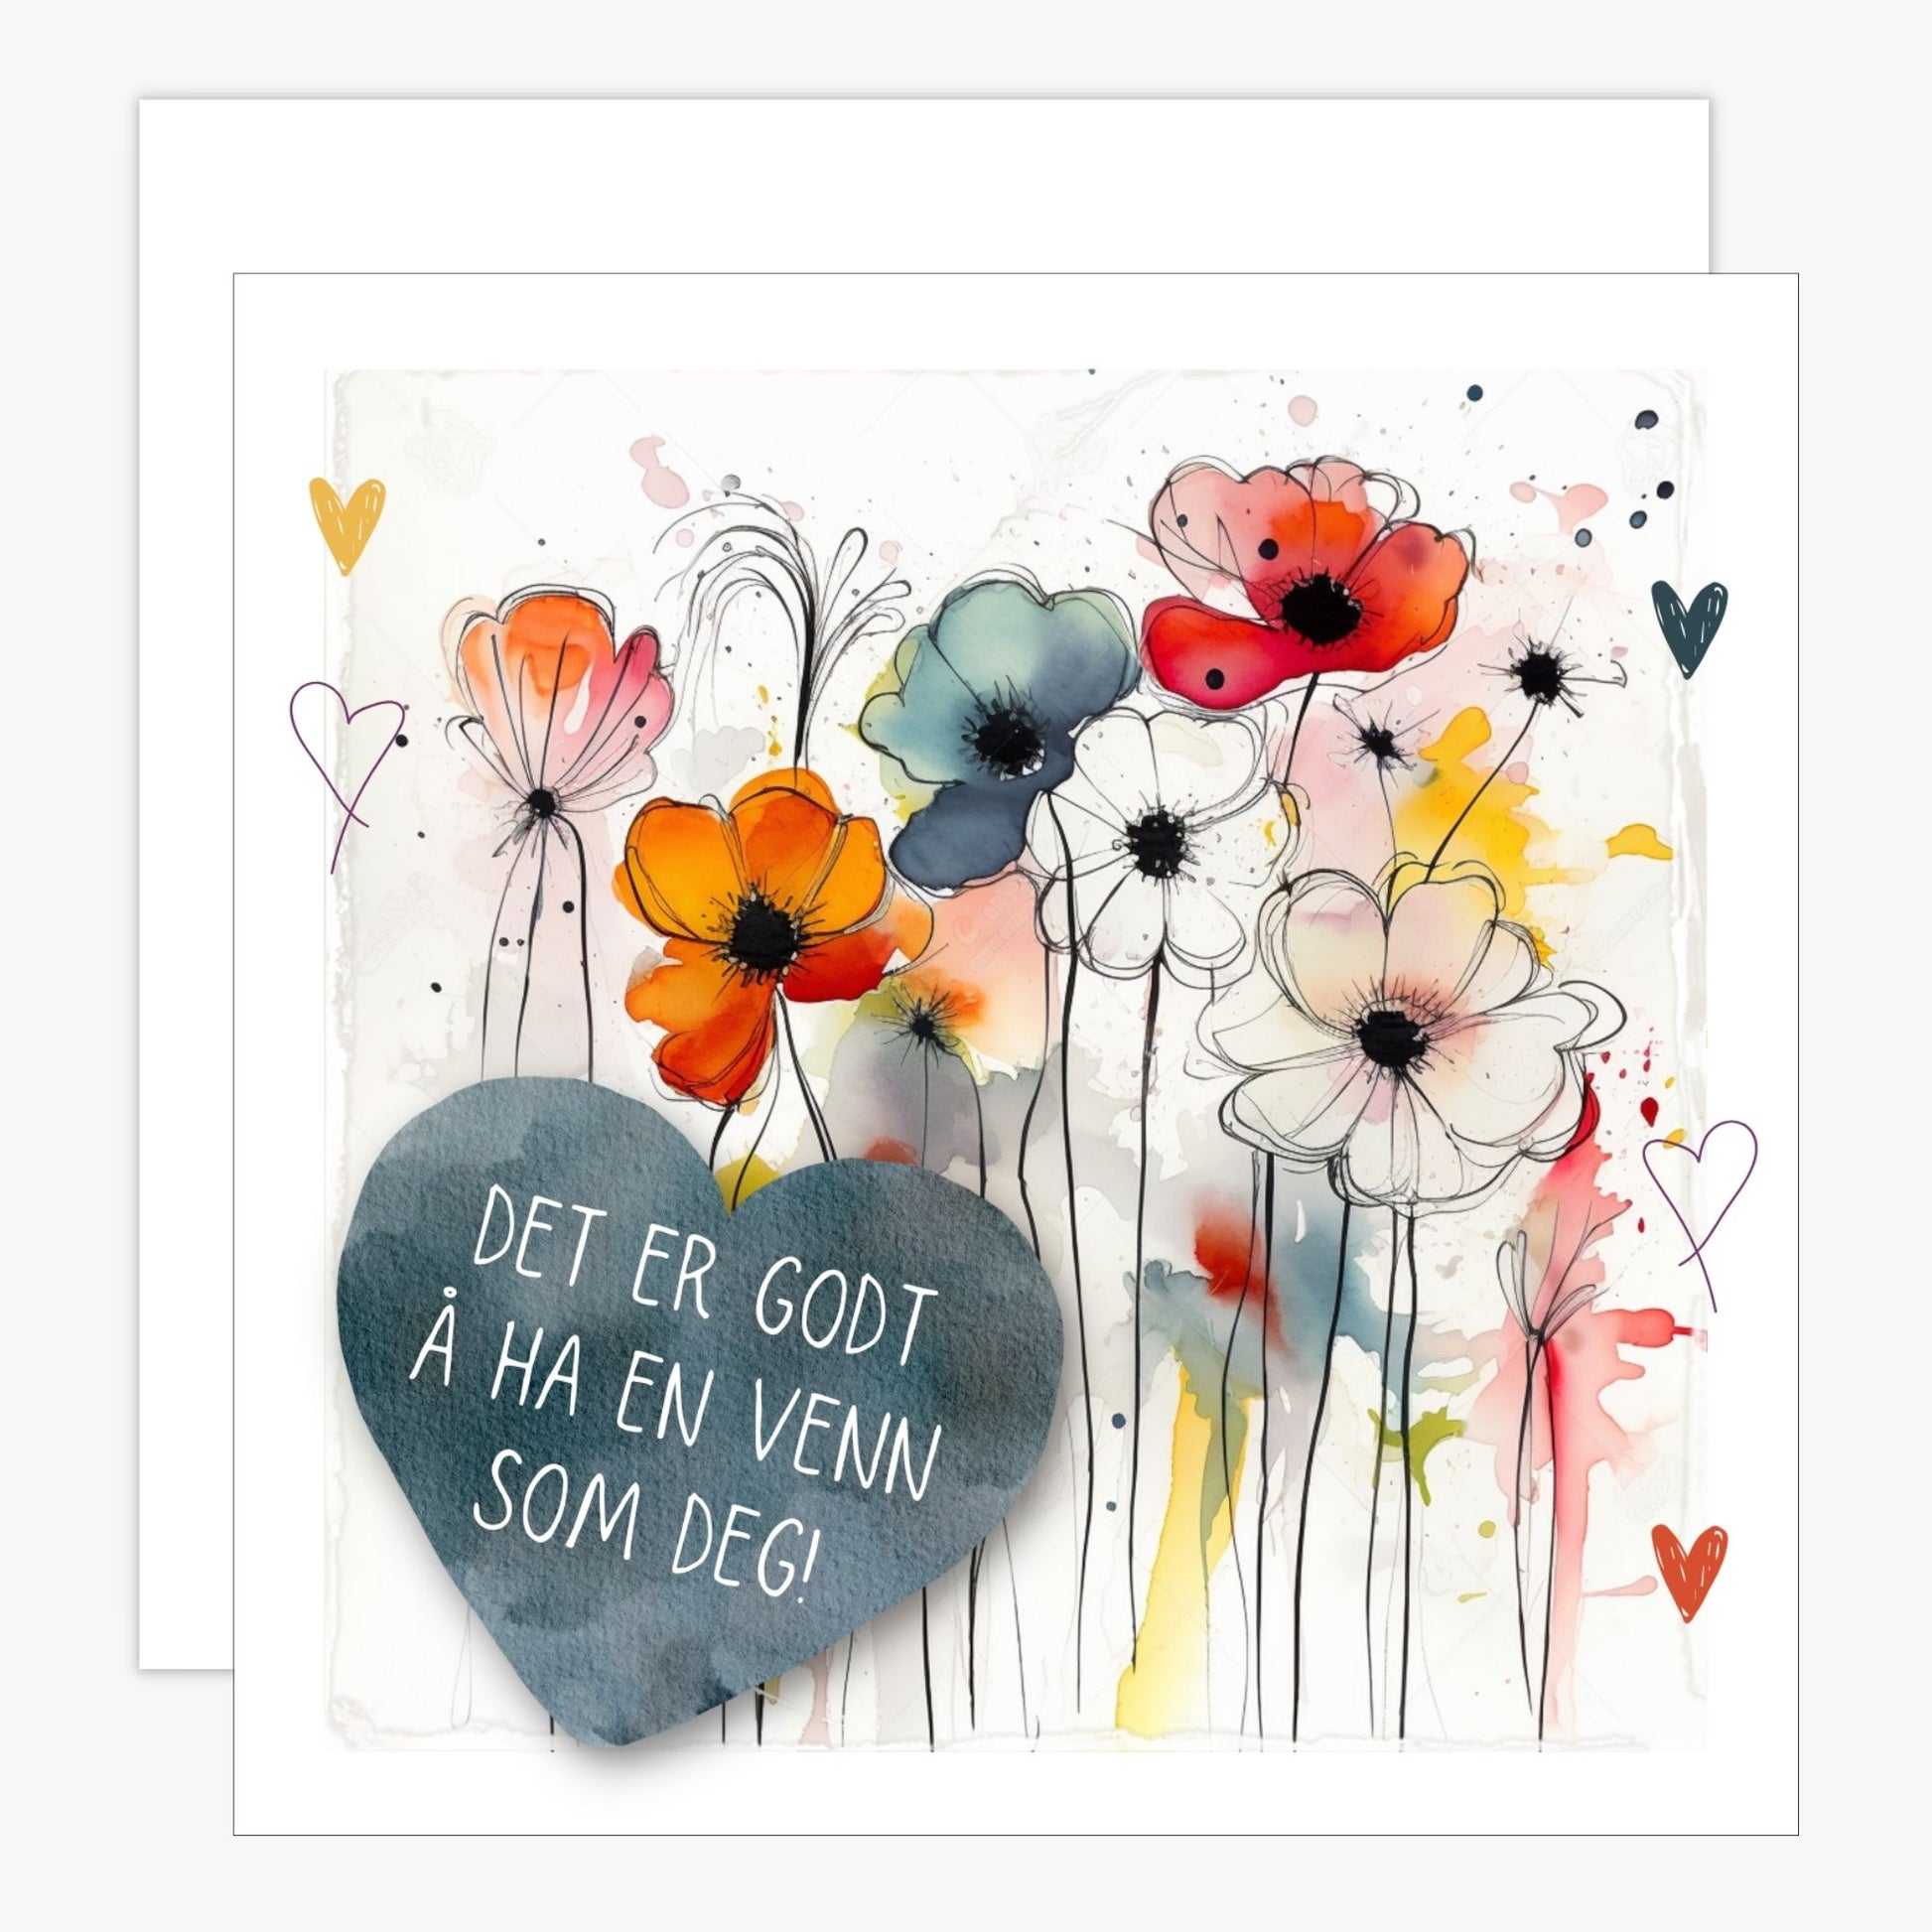 Kort med blått hjerte med tekst "Det er godt å ha en venn som deg" og bakgrunn med fargerik blomstereng. Konvolutt er inkludert.